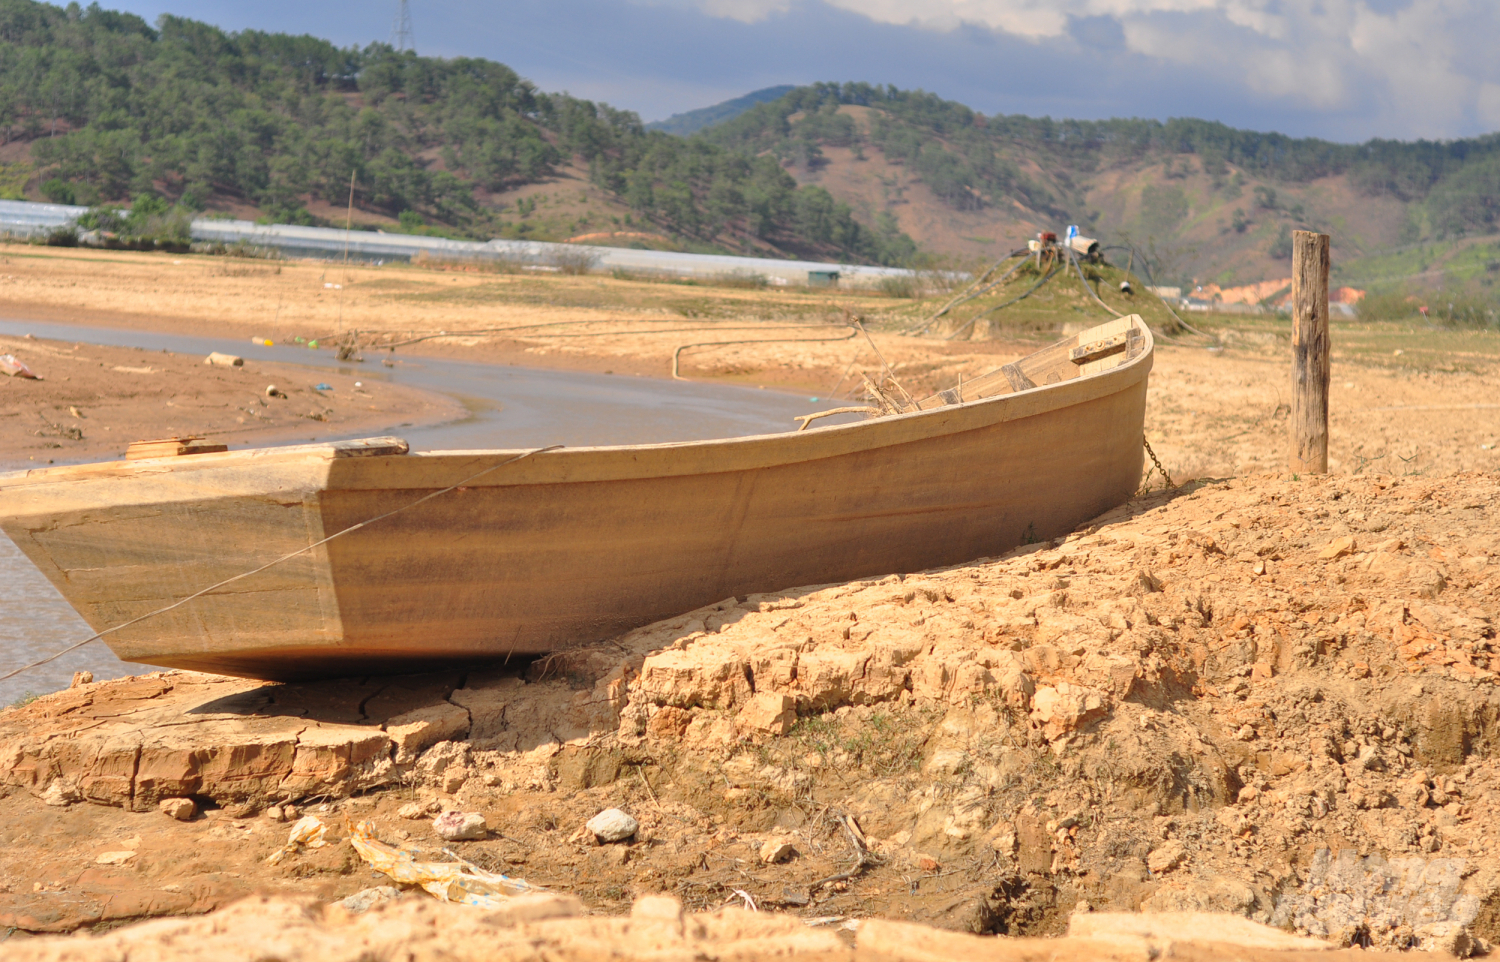 Hiện nay, do tình hình khô hạn nên nhiều hồ nước ở Lâm Đồng không tích đủ nước. Dự báo, trong mùa khô năm nay, có khoảng 25 nghìn ha cây trồng của tỉnh không đủ nước tưới, trên 4 nghìn hộ dân thiếu nước sinh hoạt.